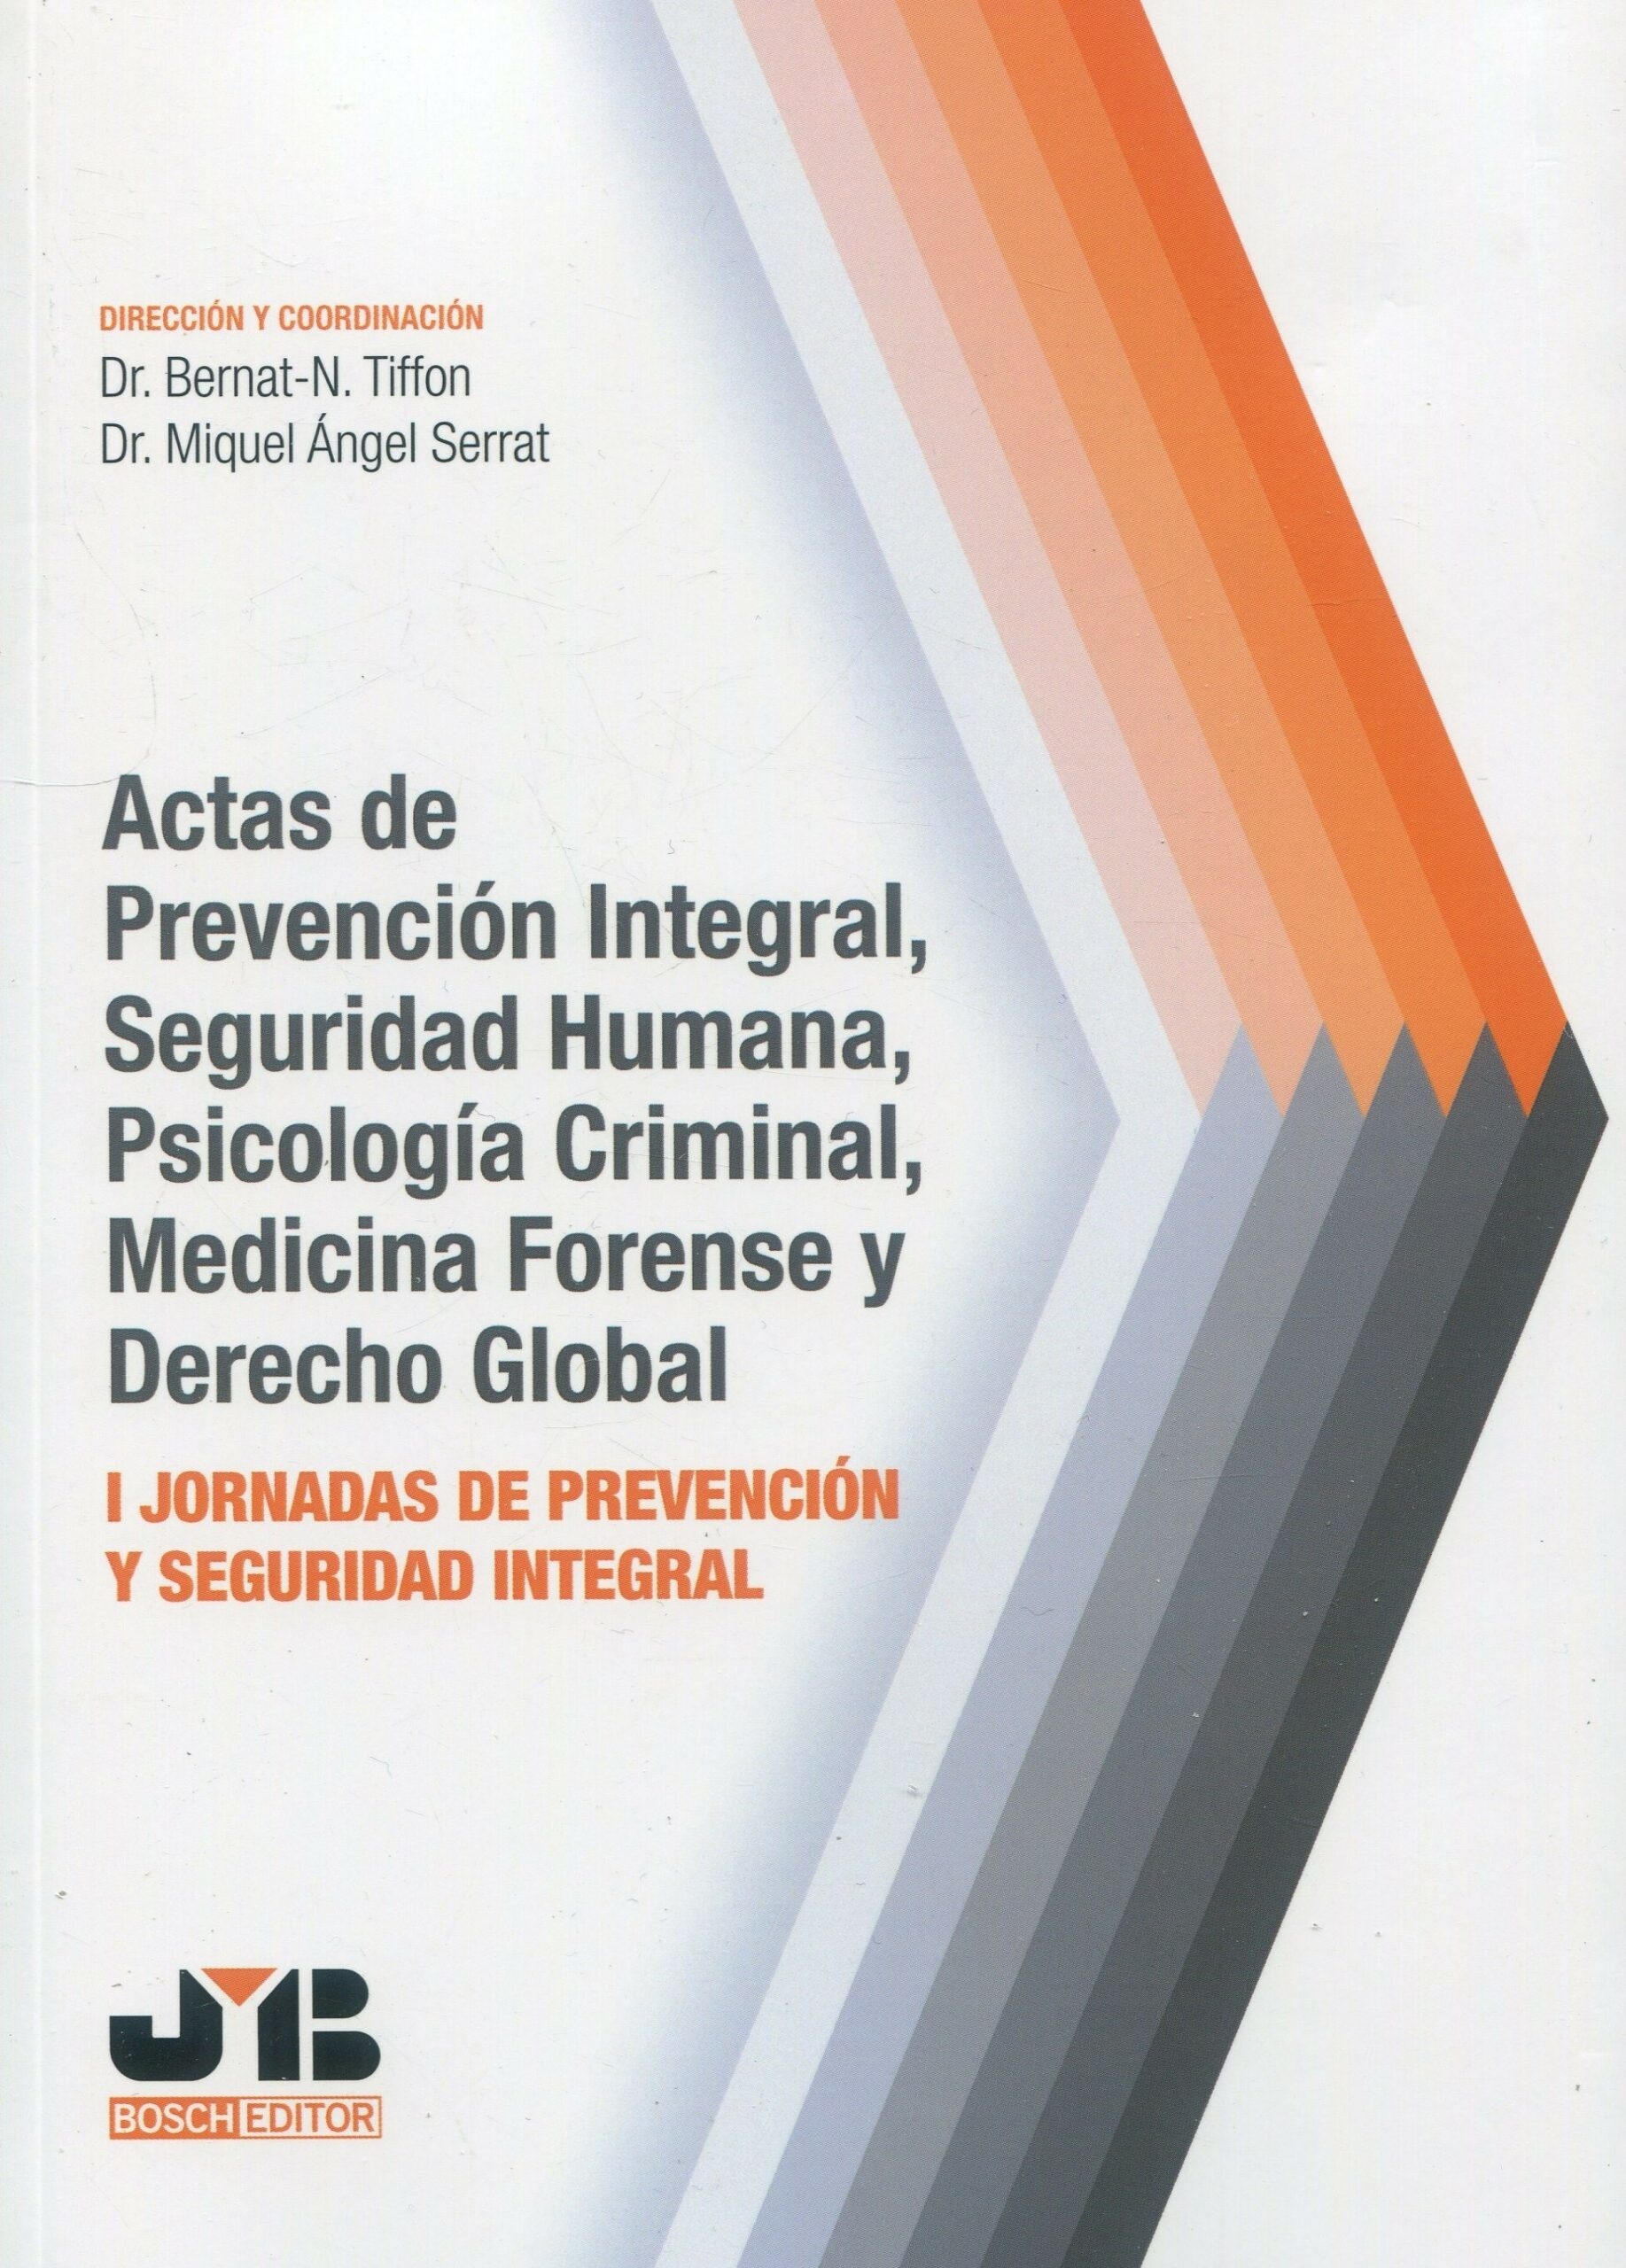 Actas de prevención integral, seguridad humana, psicología criminal, medicina forense y derecho global "I Jornadas de Prevención y Seguridad Integral"